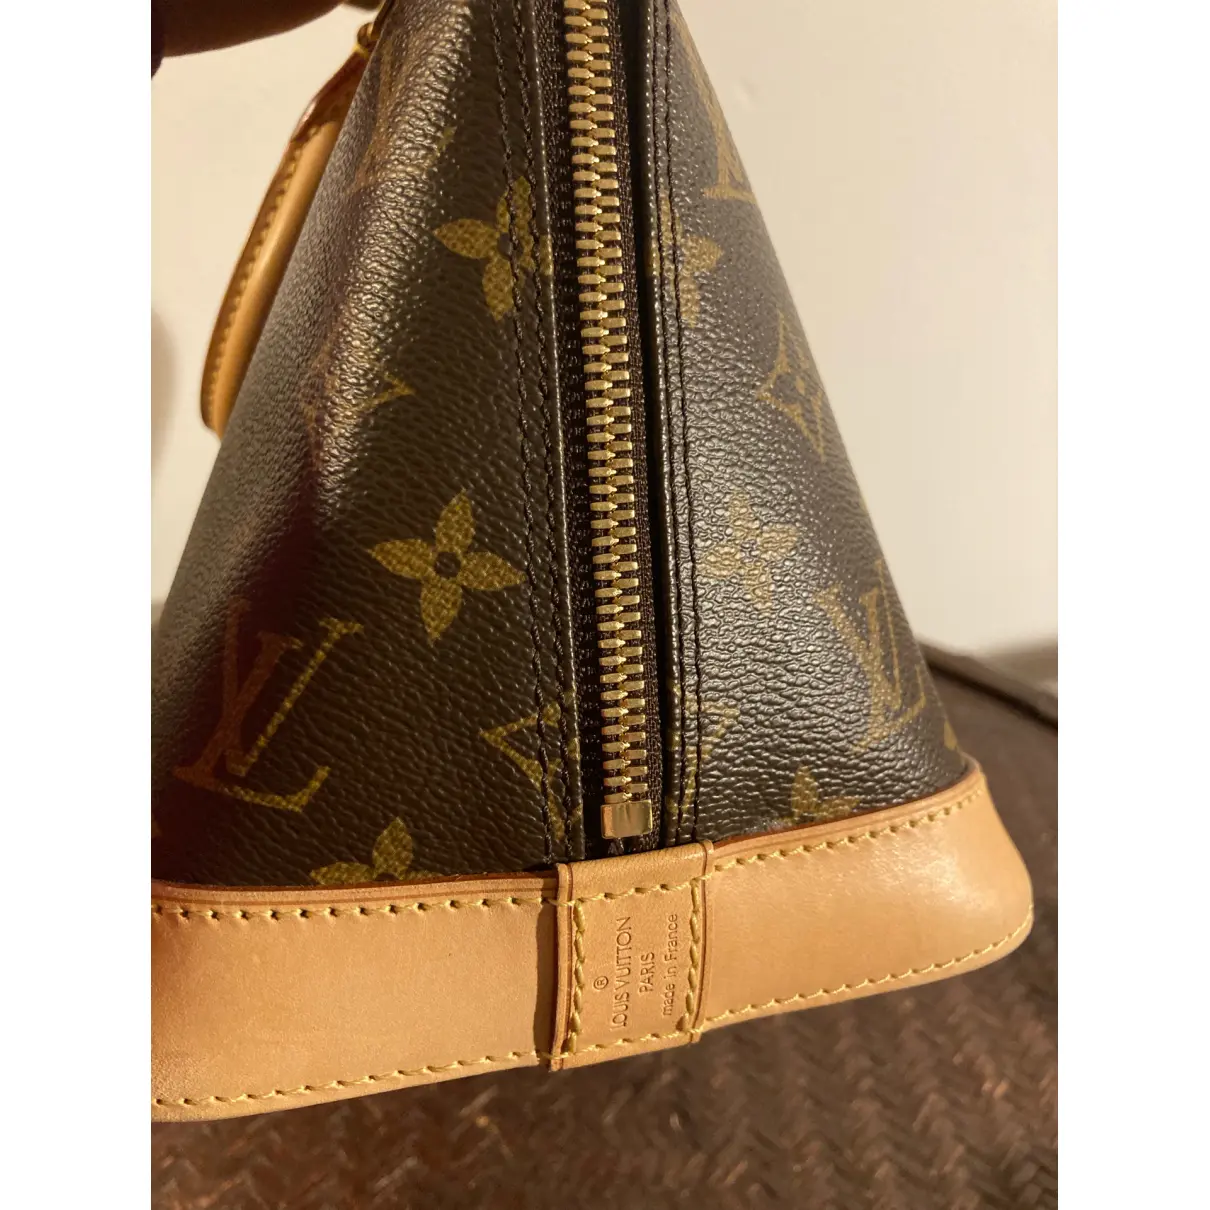 Buy Louis Vuitton Alma cloth handbag online - Vintage